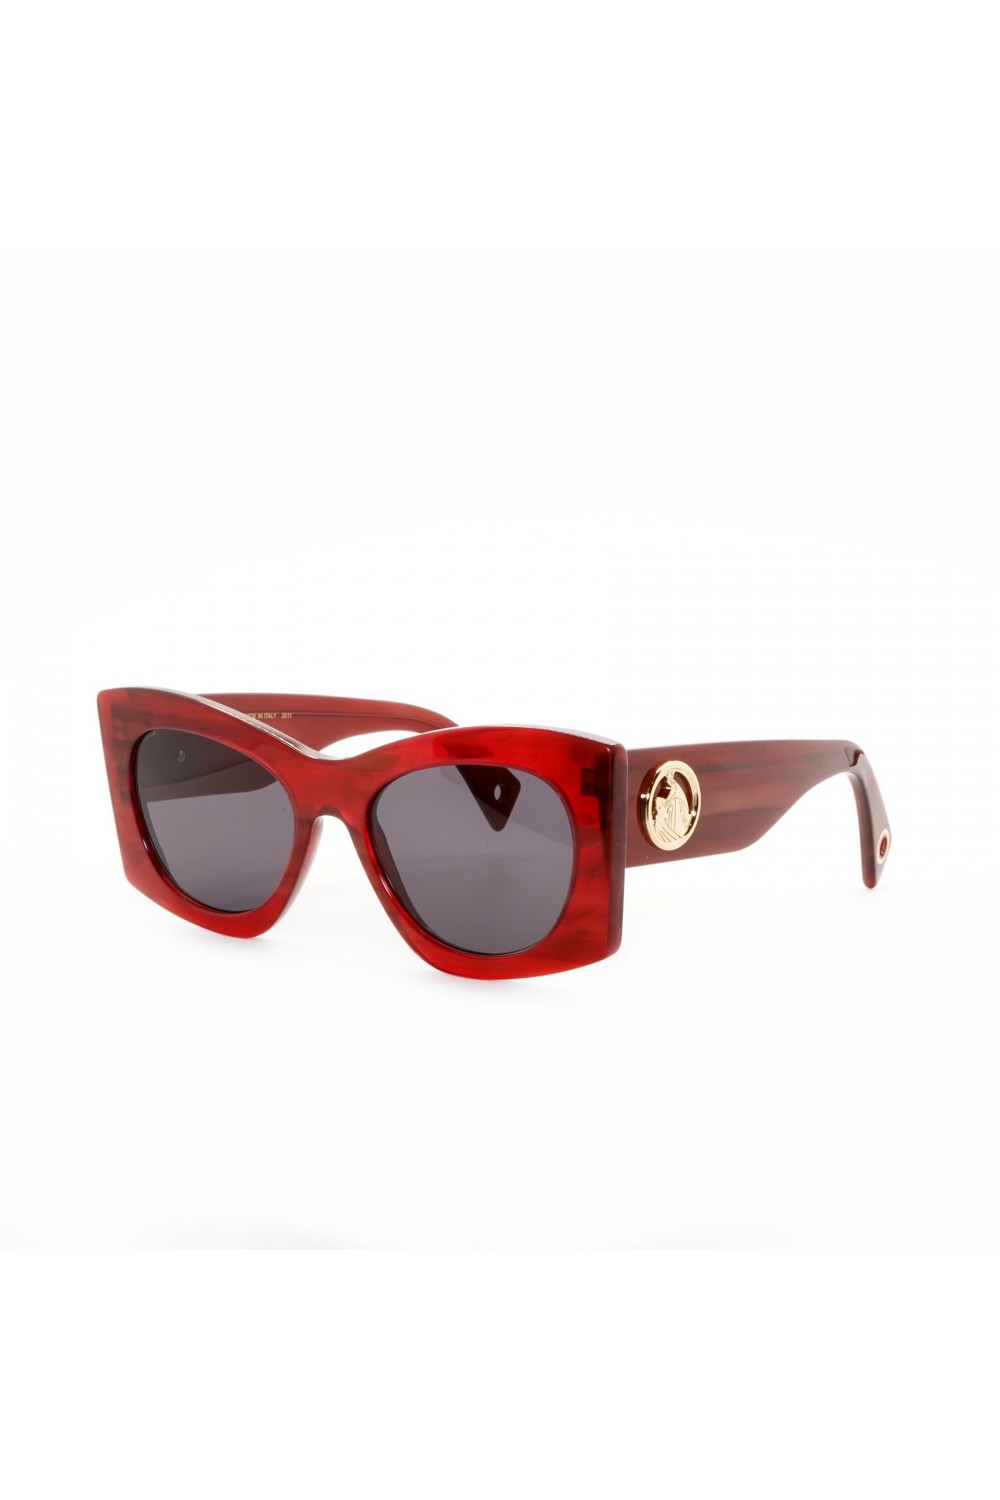 Lanvin - Occhiali da sole in celluloide squadrati per donna tartarugato rosso -